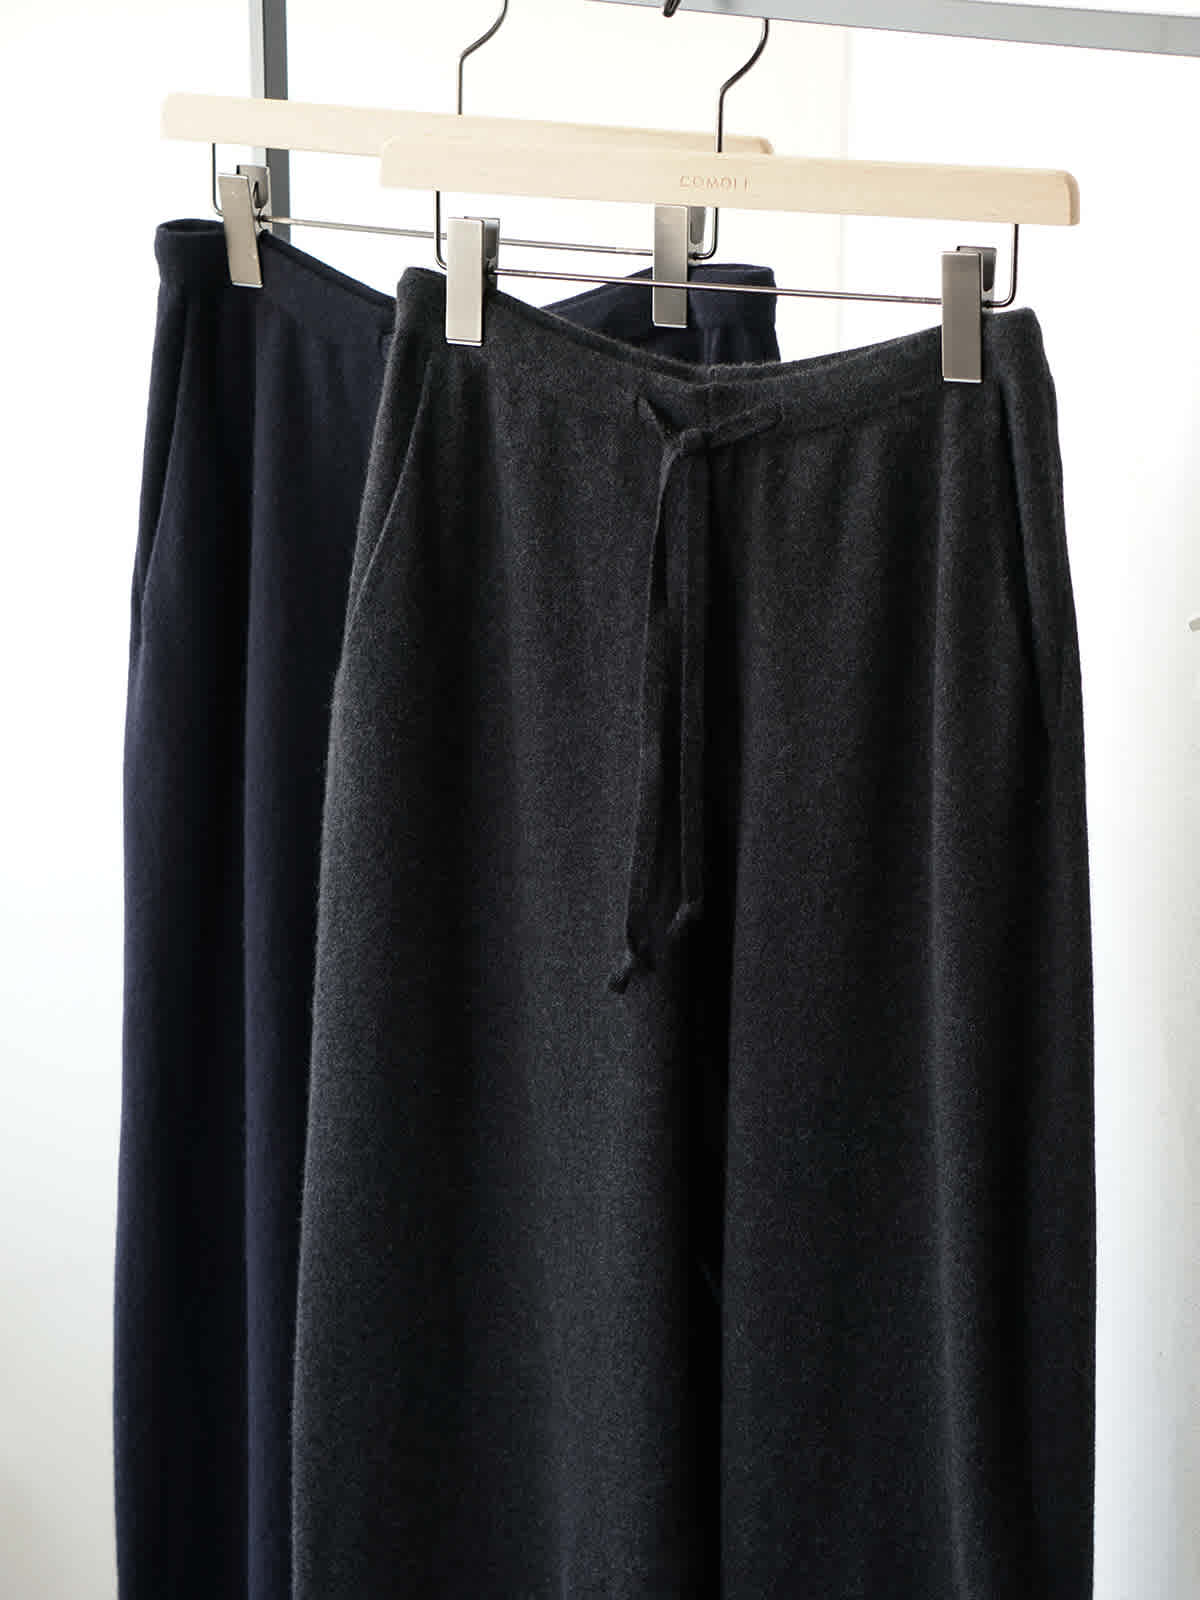 cashmere knit pants y7